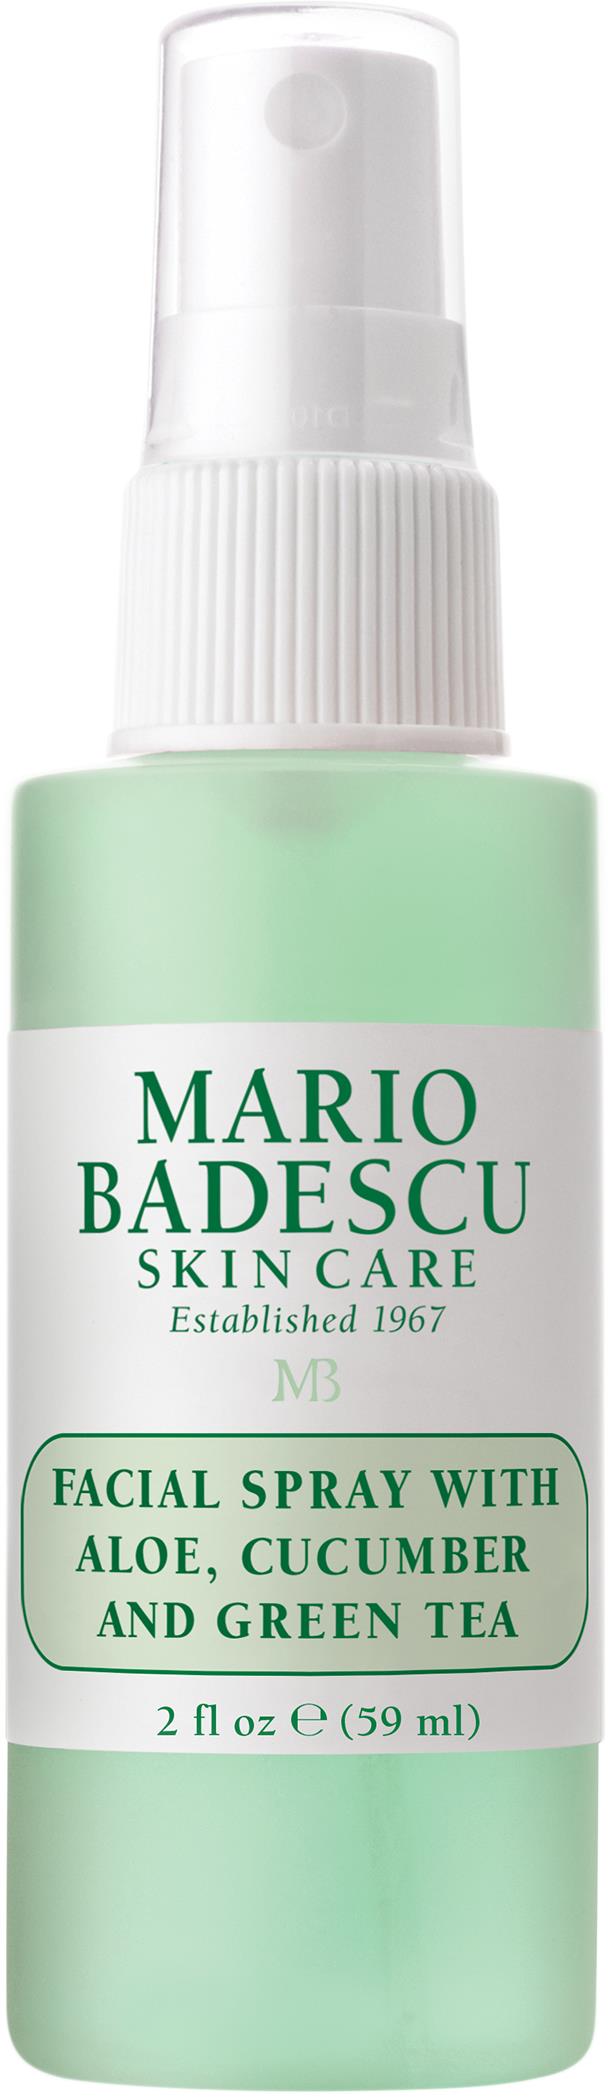 Mario Badescu Facial Spray W/ Cucumber & Green 59 ml | lyko.com